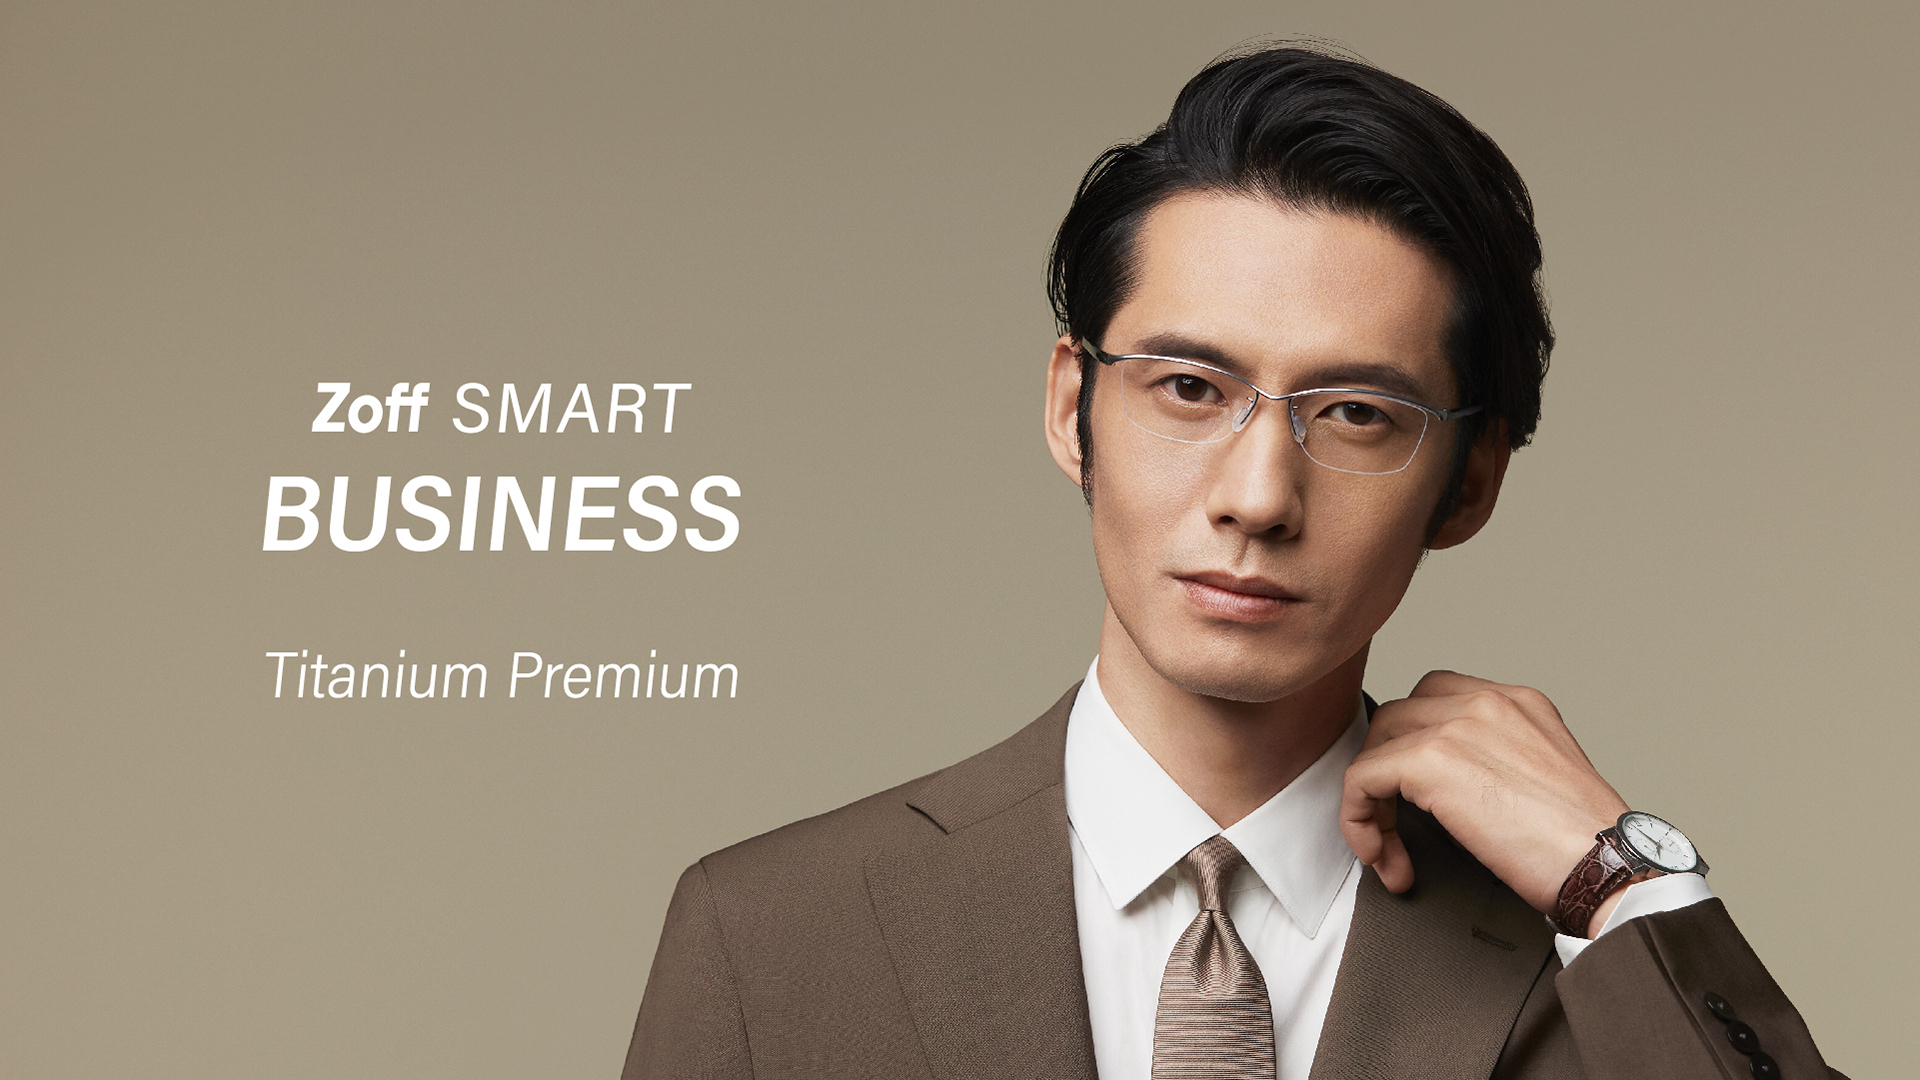 見た目にもかけ心地にもこだわったビジネスシーンに最適なメガネ「Zoff SMART BUSINESS」に新作登場